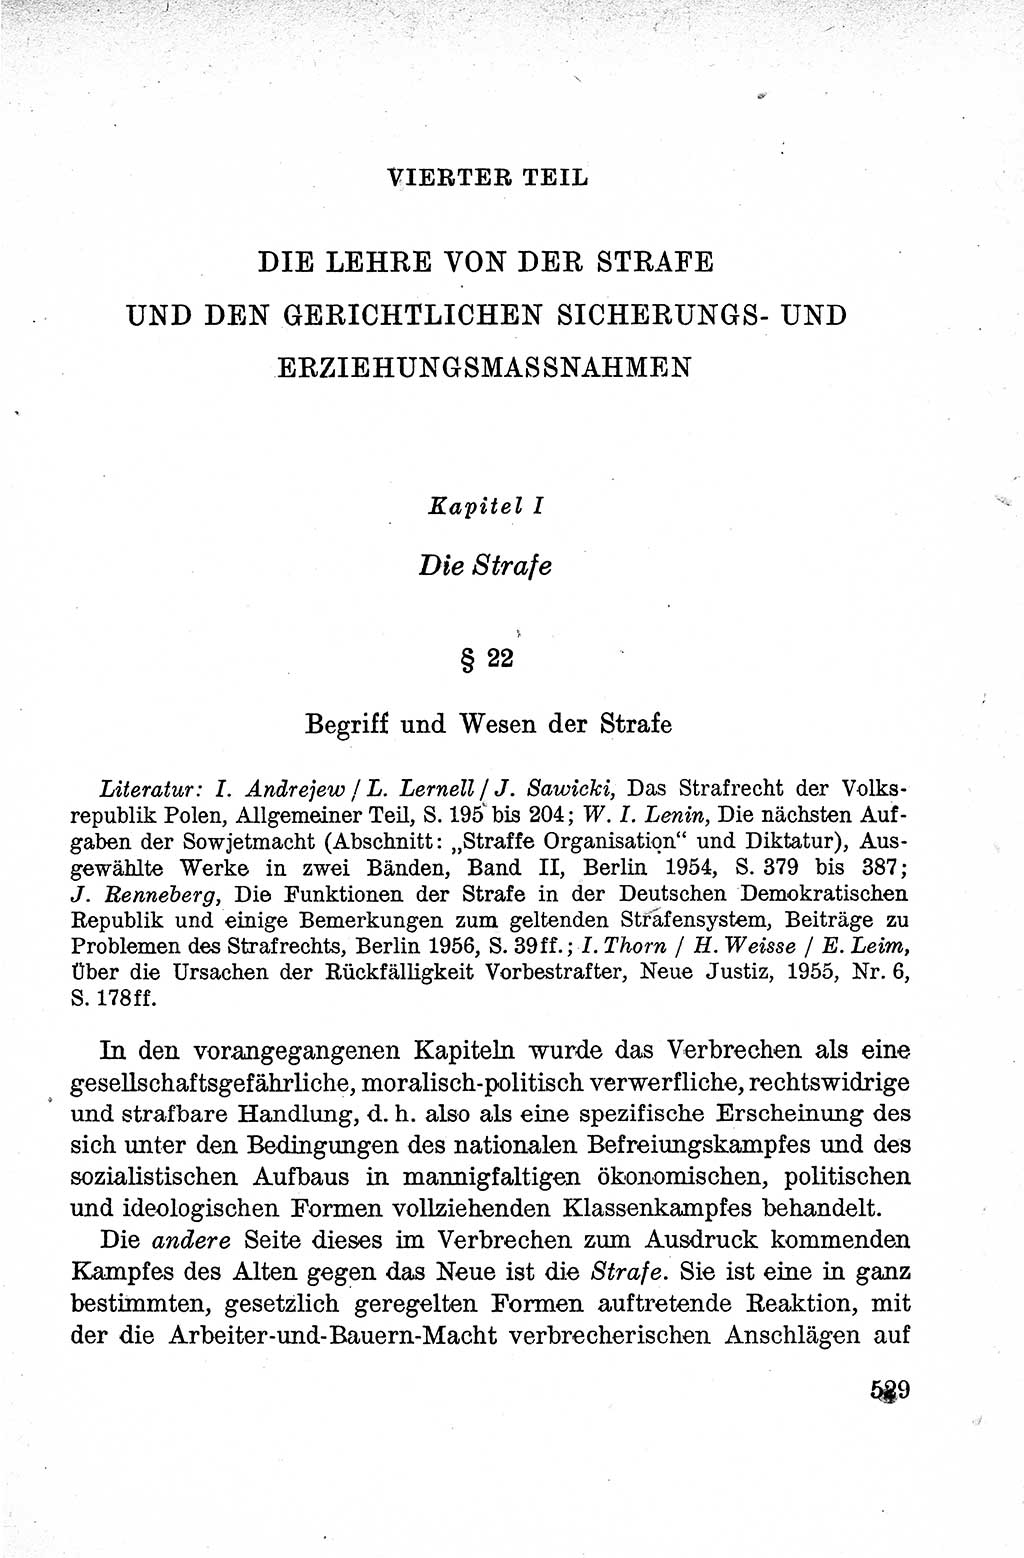 Lehrbuch des Strafrechts der Deutschen Demokratischen Republik (DDR), Allgemeiner Teil 1959, Seite 529 (Lb. Strafr. DDR AT 1959, S. 529)